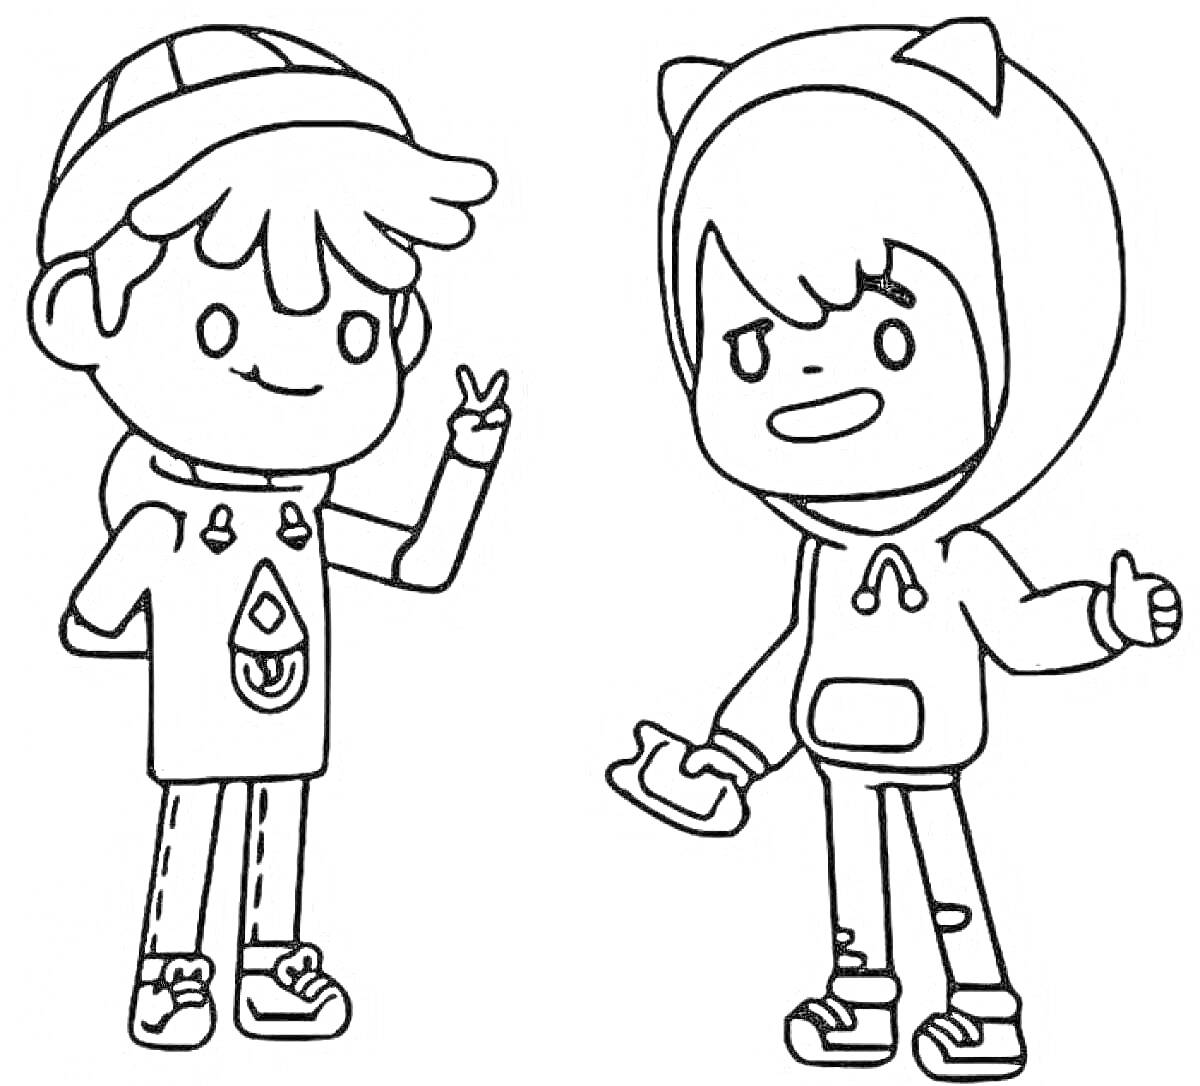 Раскраска Два персонажа из Toca Boca - мальчик в шапке и футболке с узором и мальчик в худи с кошачьими ушками